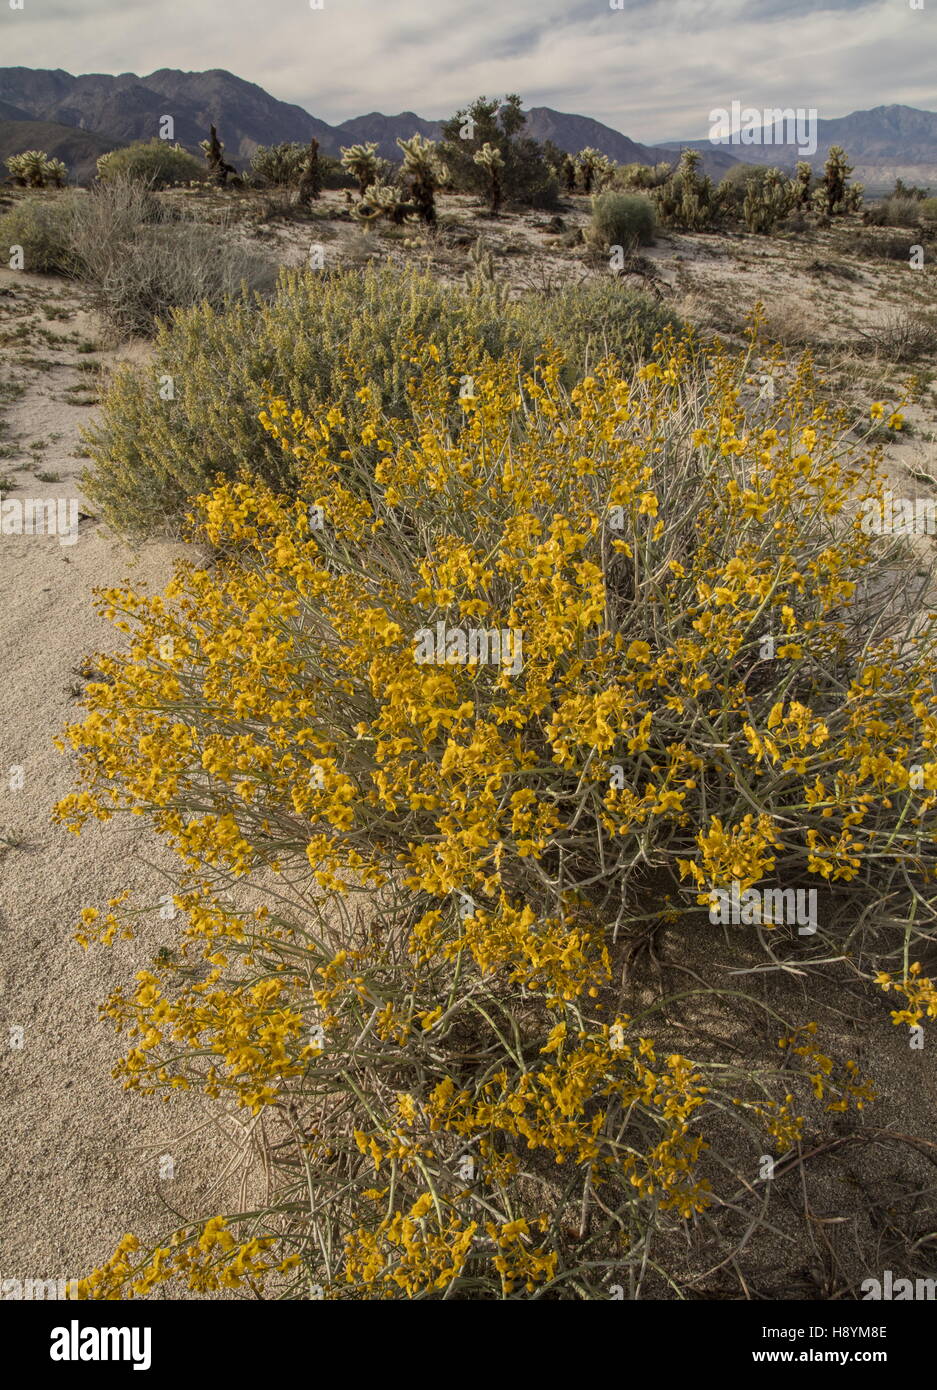 Senna, Senna armata du désert, en fleurs dans le désert californien. Anza-Borrego Desert State Park, désert de Sonora, en Californie. Banque D'Images